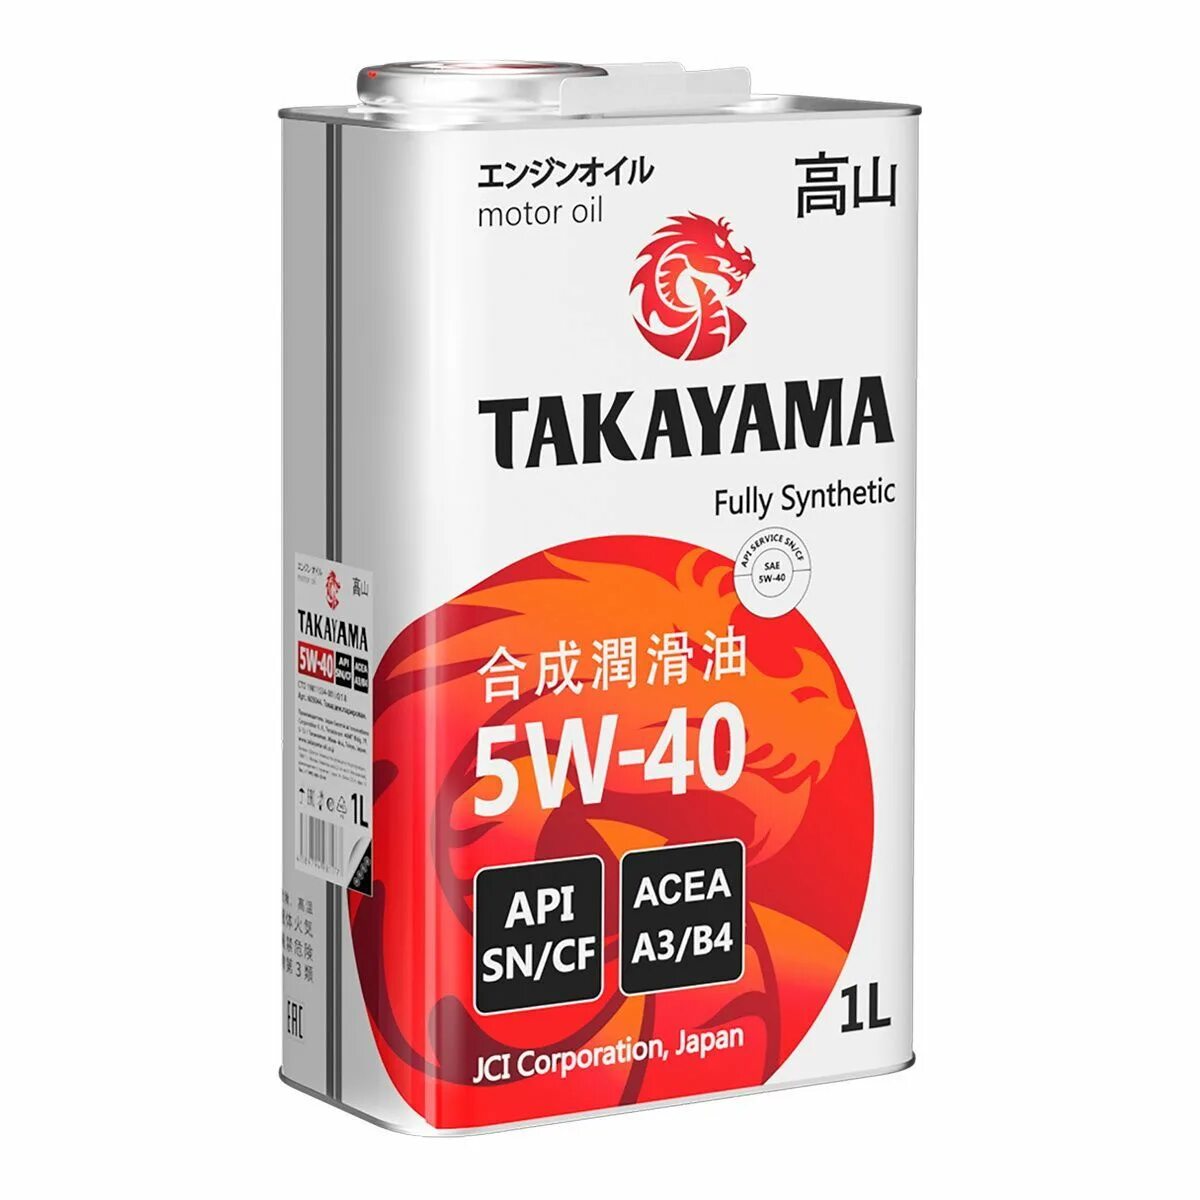 Takayama 5w-40 API SN/CF. Takayama SAE 5w-40 API CF, SN a3/b4. 605045 Takayama масло Takayama SAE  5w40. API SN/CF. ACEA a3/b4 (4л). Takayama 605521промопак Takayama акция 5w40 SN/CF синтетика 4л + 1л. Масло takayama 5w 40